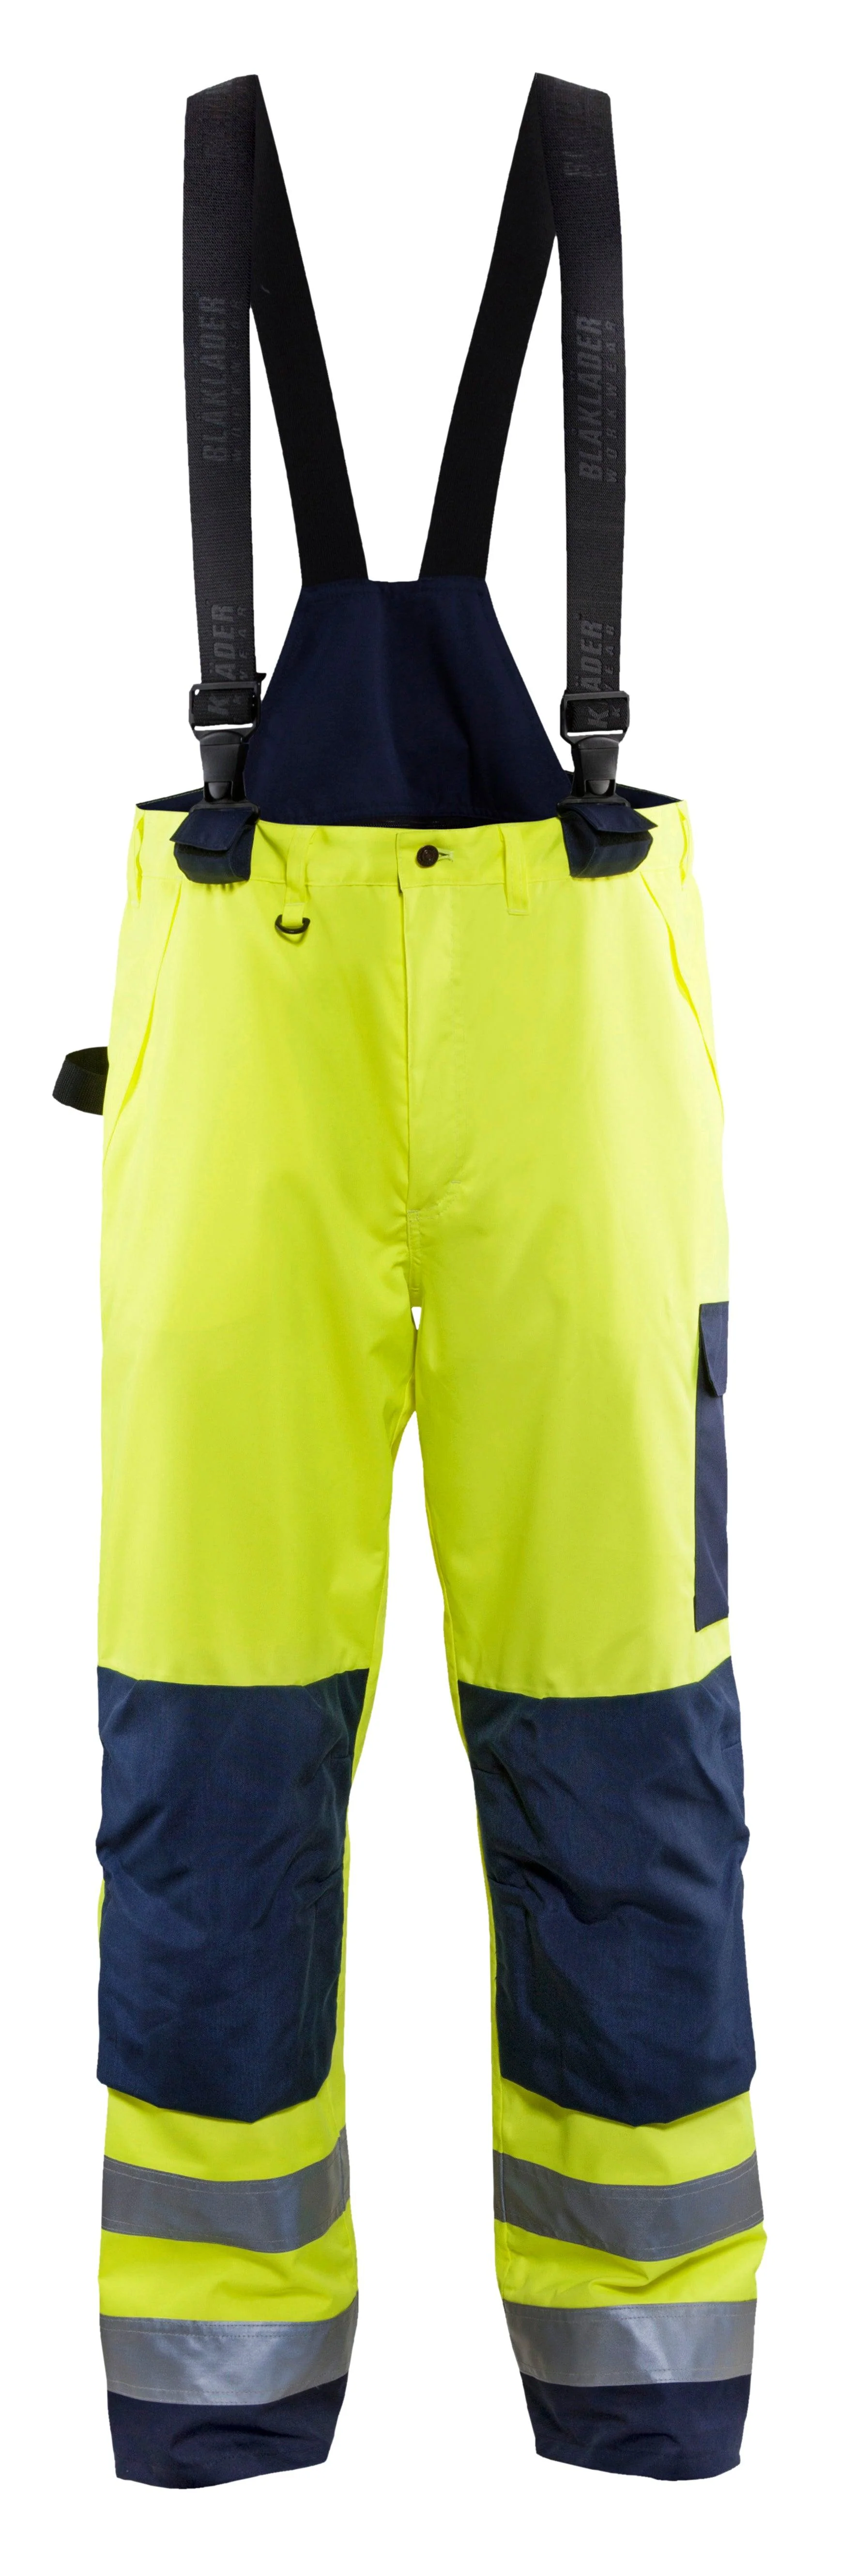 Waterproof Jacket/Trouser Set